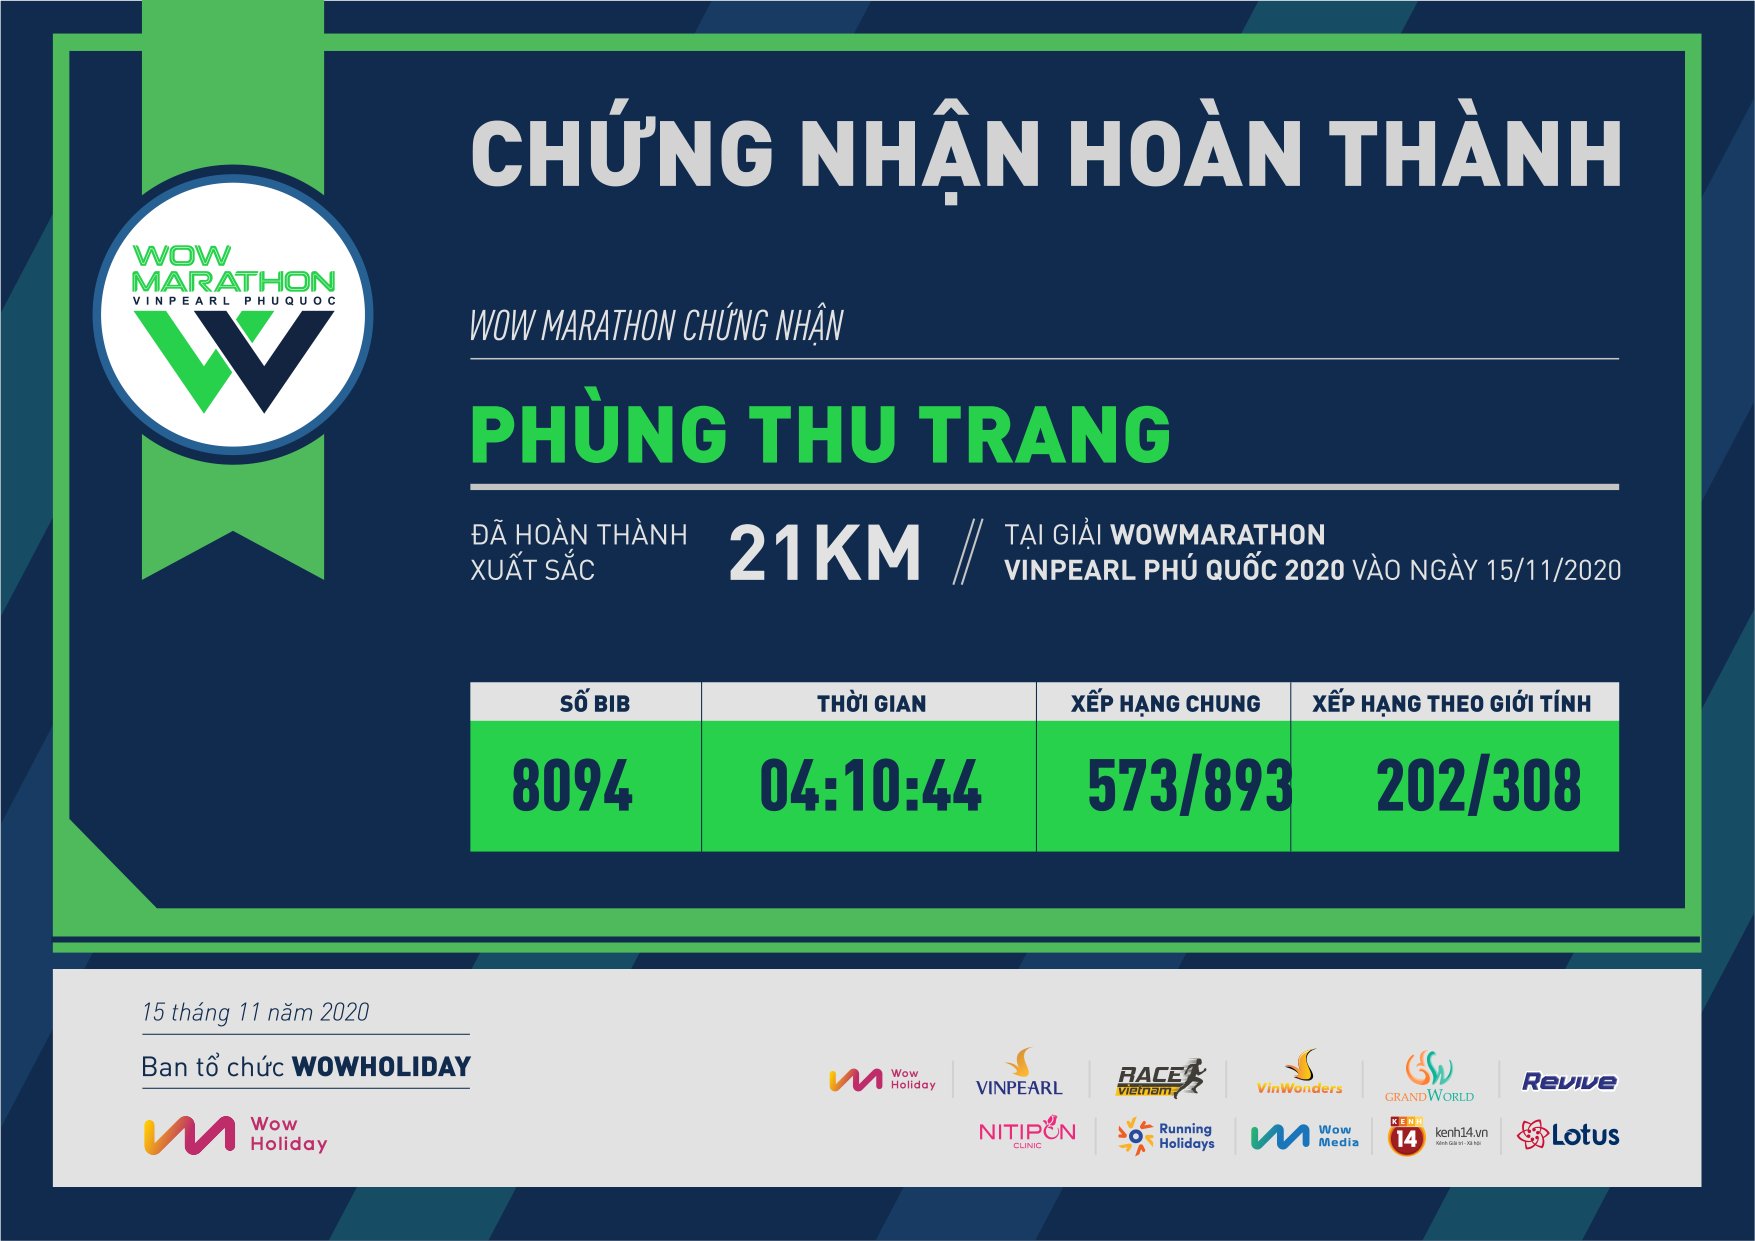 8094 - Phùng Thu Trang